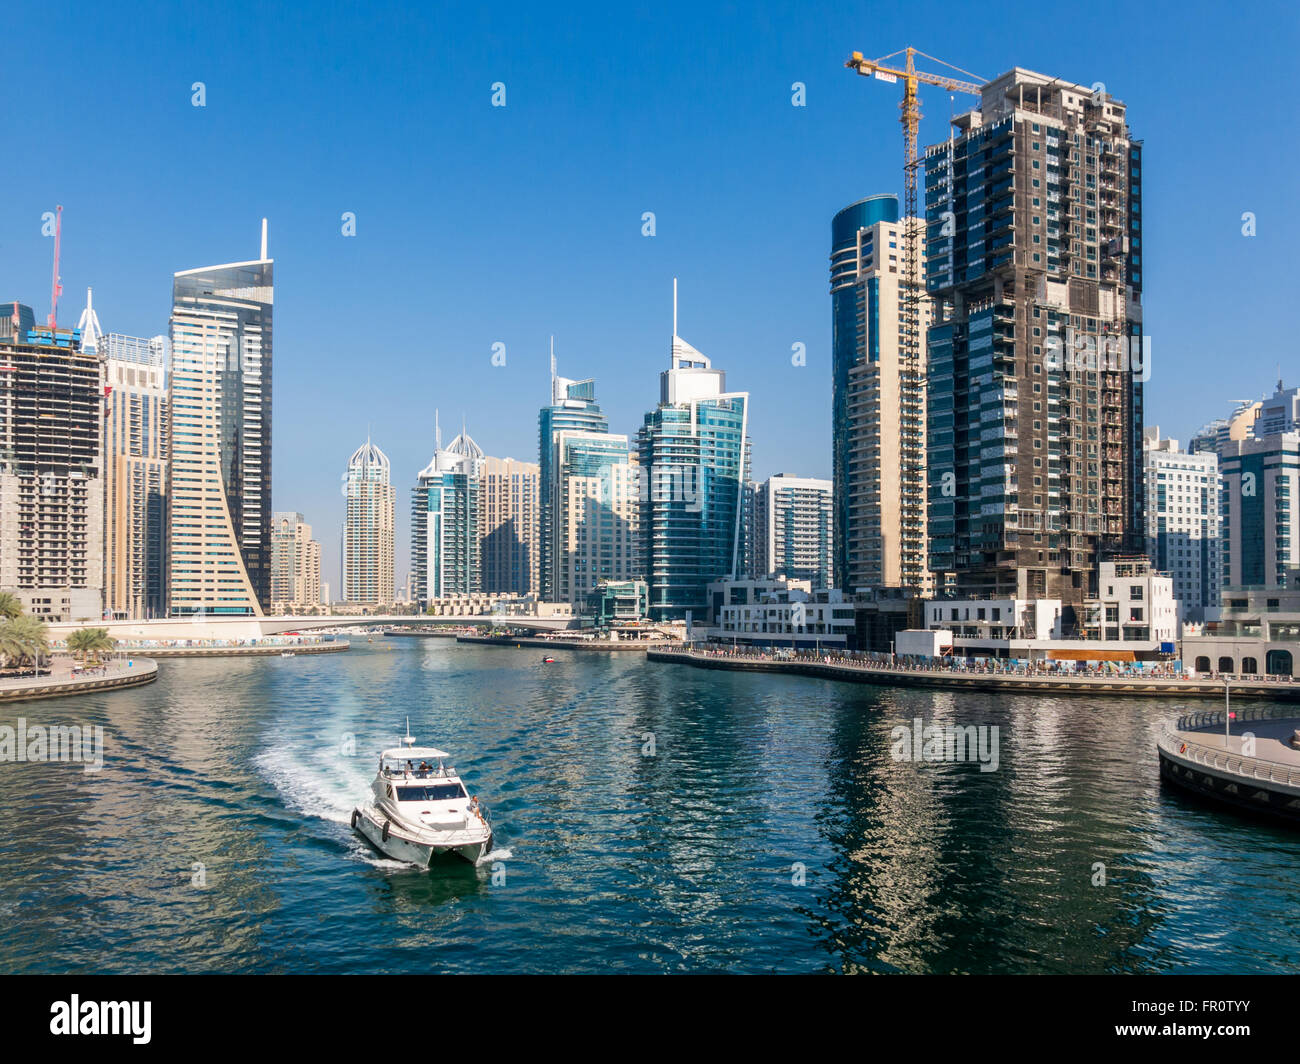 Edificios gigantescos y barco de crucero en la zona del puerto deportivo de Dubai, Emiratos Árabes Unidos. Foto de stock